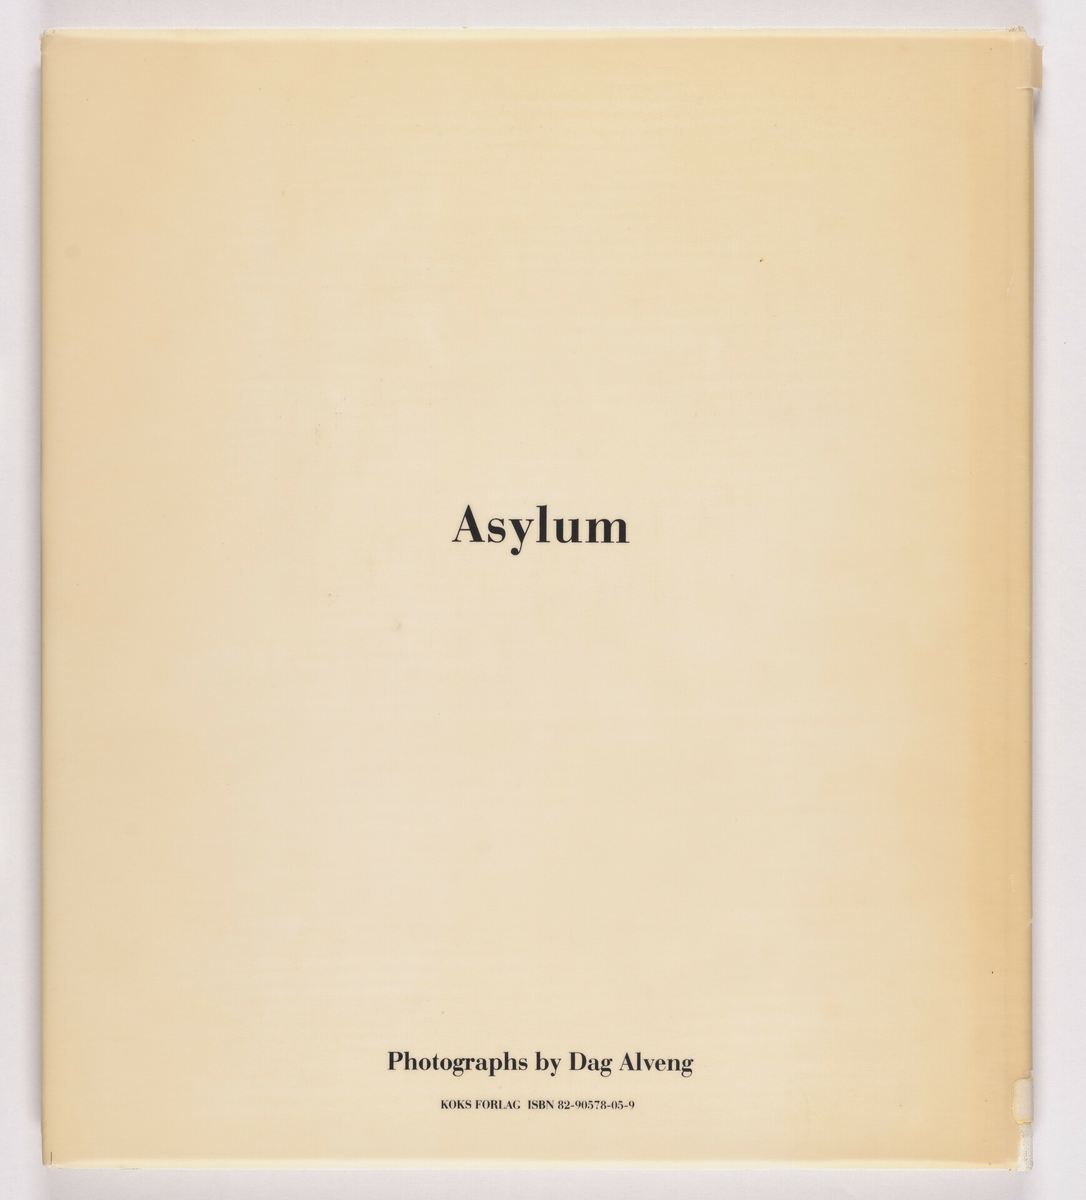 Fotobok gitt ut i 1986 av Koks forlag i samarbeid med private Preus fotomuseum. Illustrert med fotografier tatt på natten når fotograf Dag Alveng var nattevakt ved psykiatrisk institusjon, i tidsrommet 1979-1982. Design av boka er av Per Maning. Gitt ut i 400 eksemplarer.